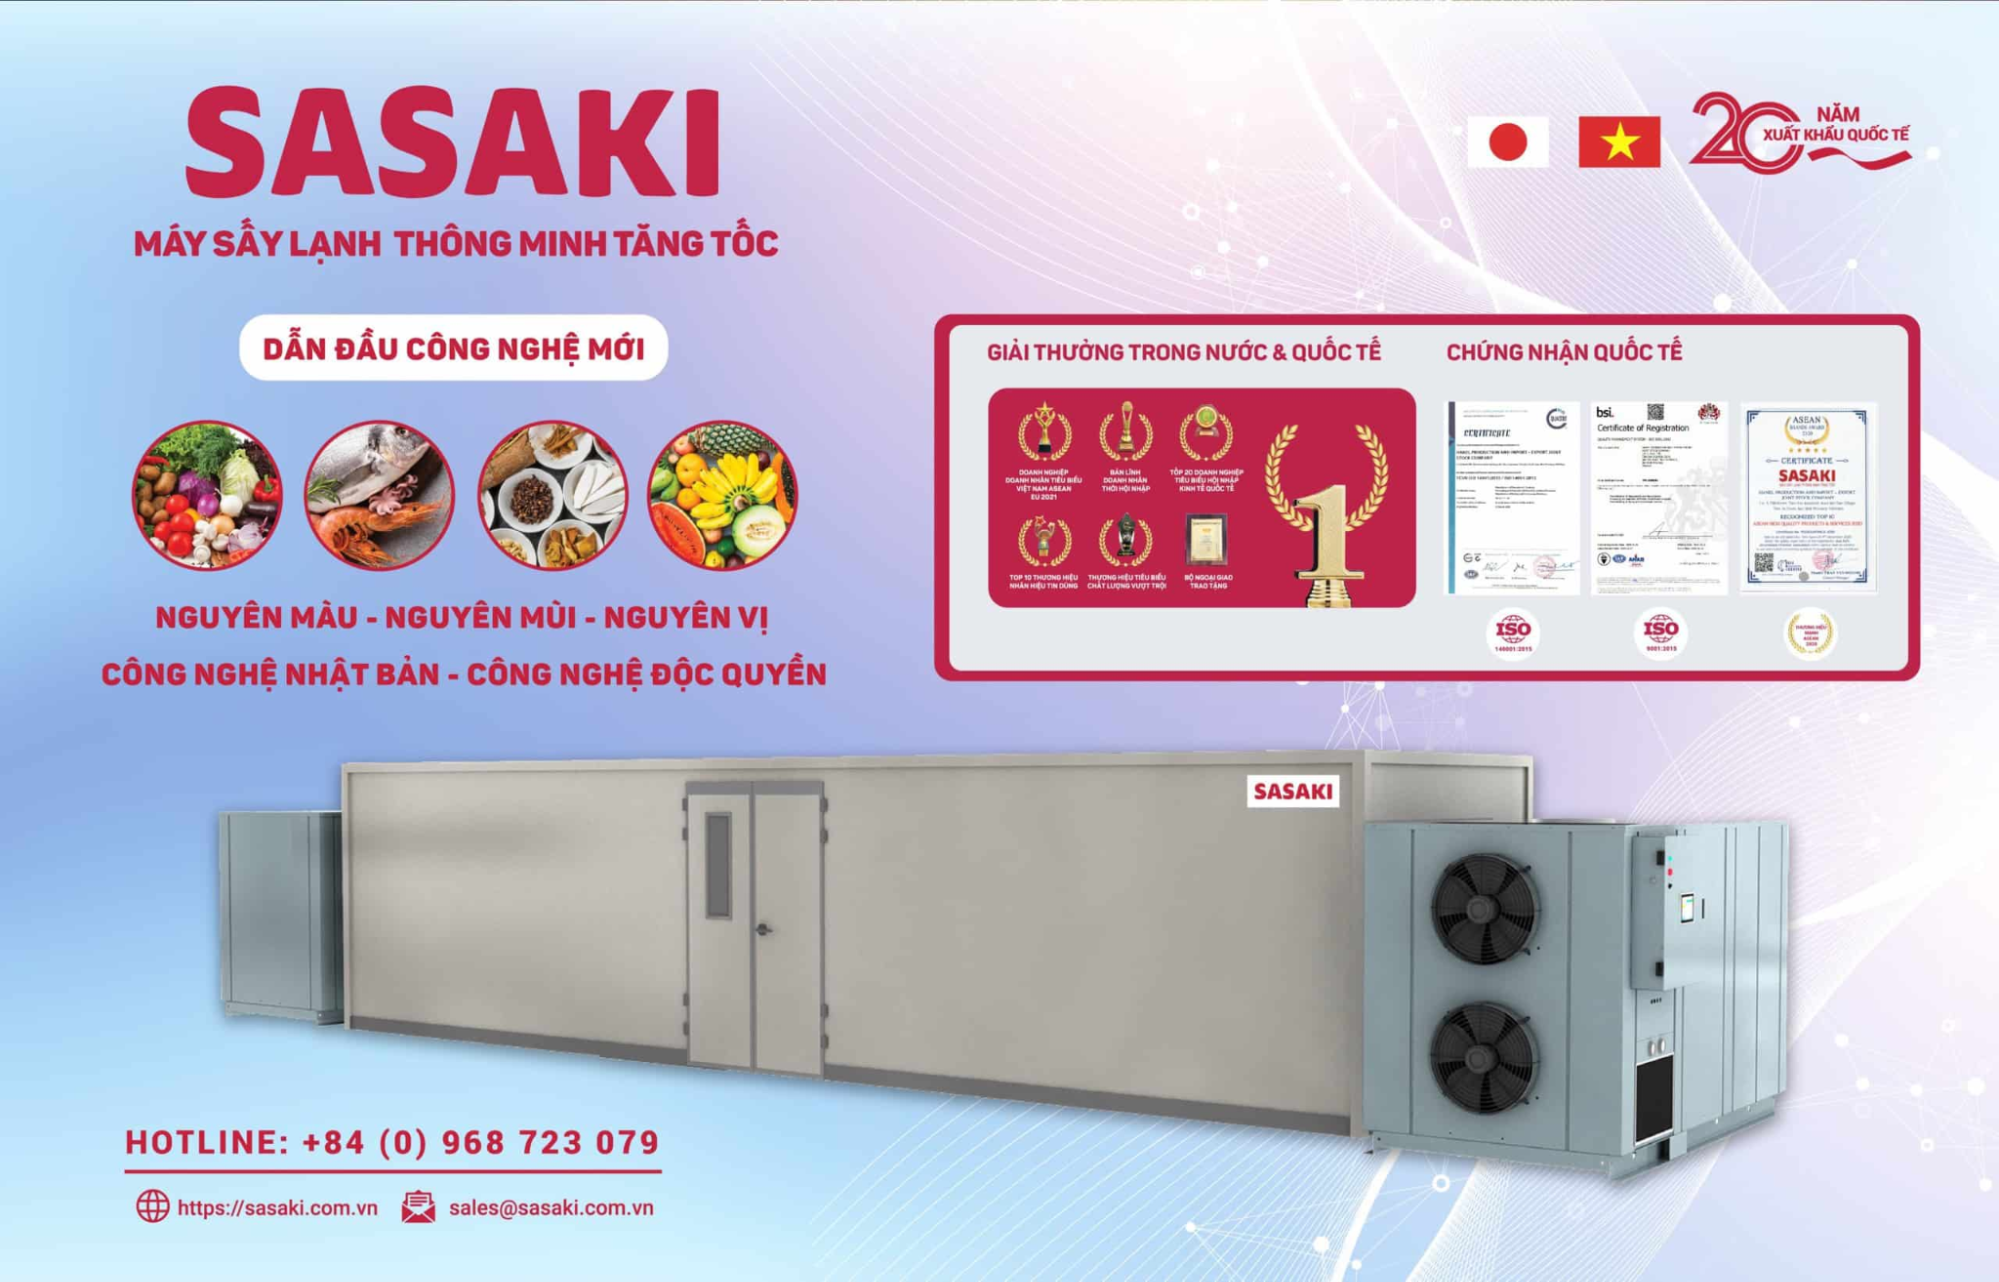 Điểm nhấn của máy sấy thực phẩm công nghiệp SASAKI là thành phẩm giữ nguyên màu sắc, sấy đa thực phẩm